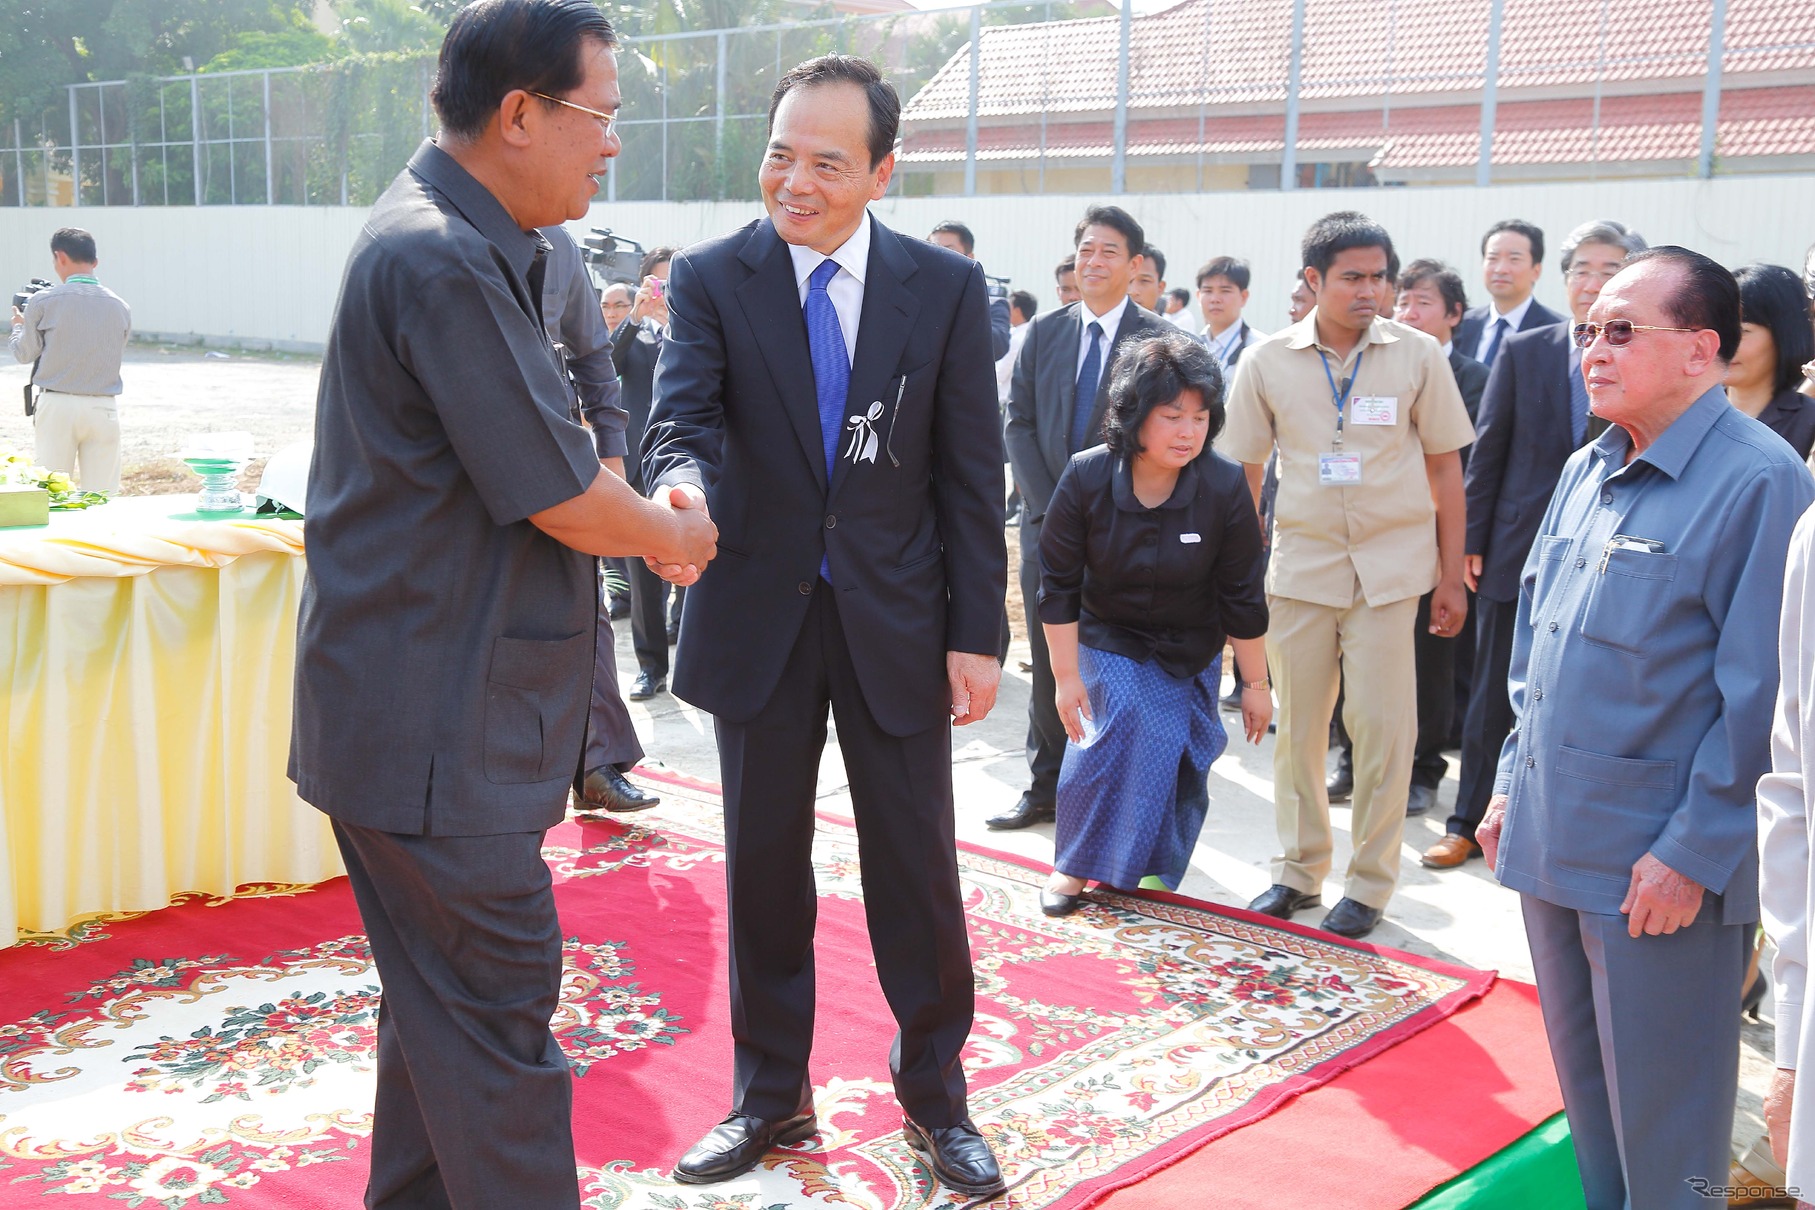 起工式に出席した、イオンの岡田元也社長（右）とカンボジアのフン・セン首相（左）